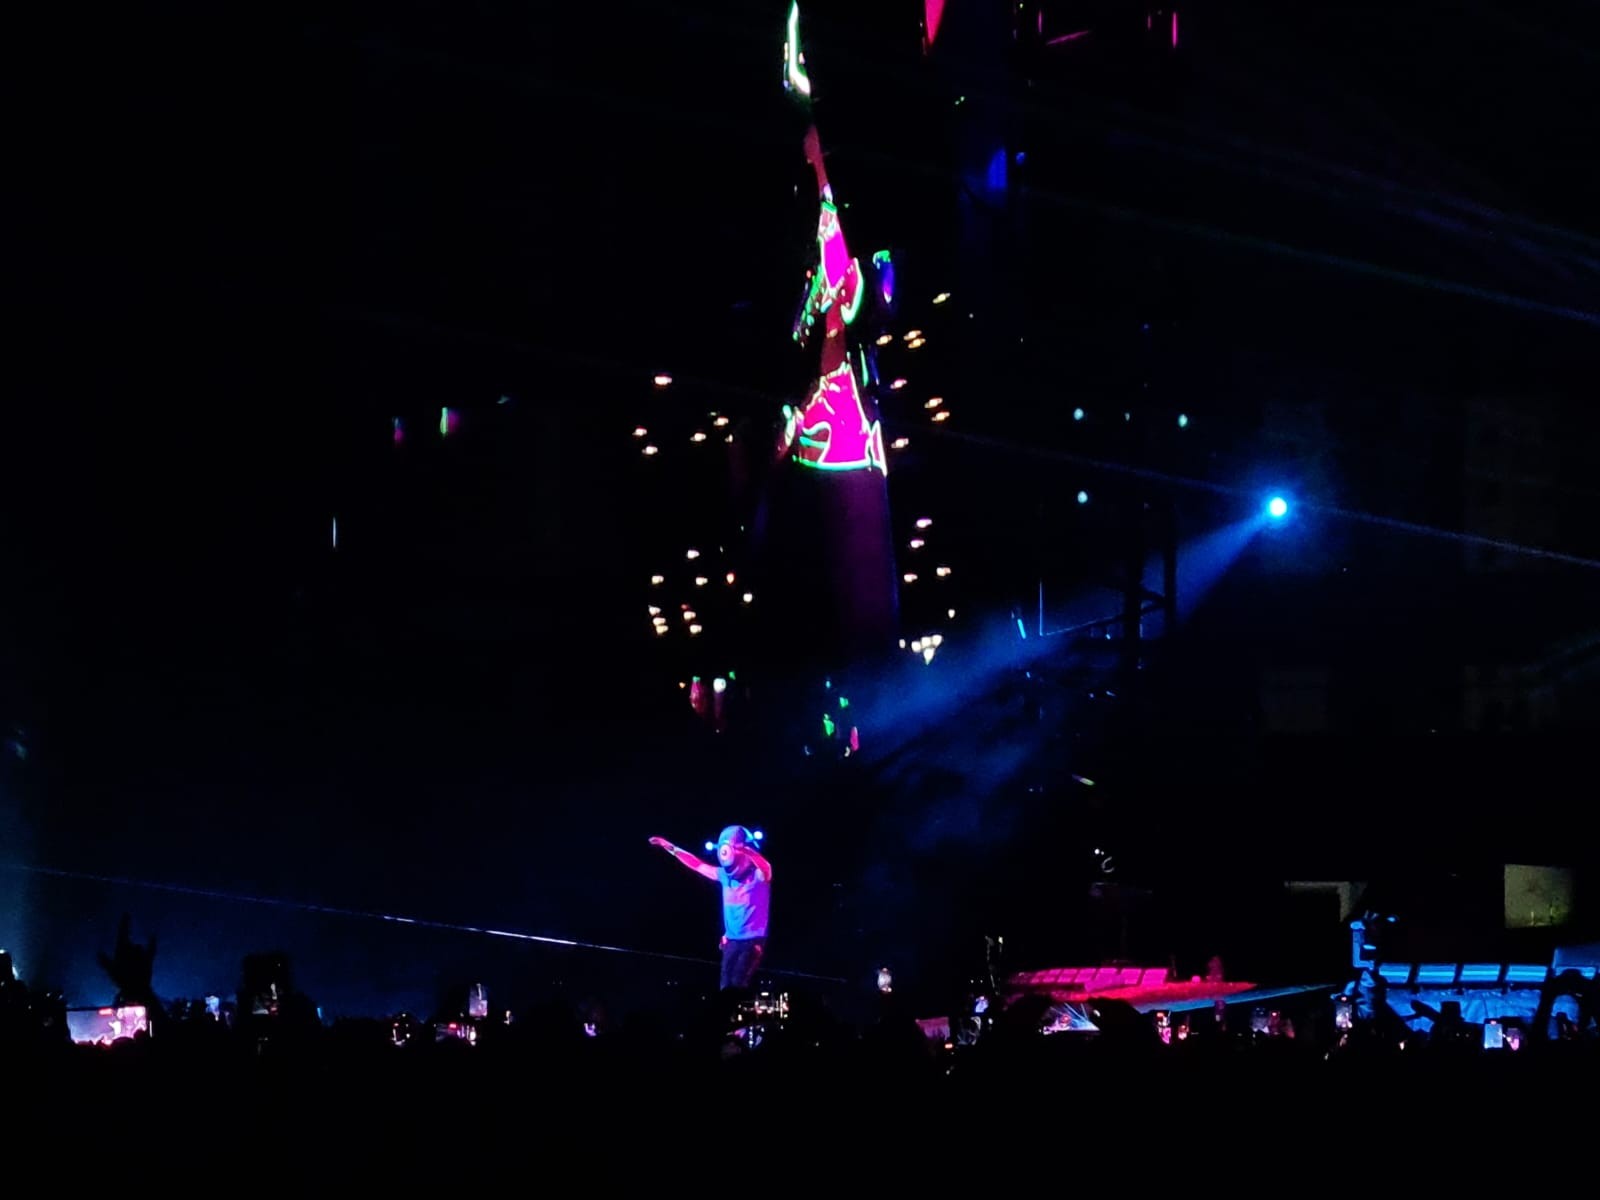 Turnê mundial "Music of the Spheres", do Coldplay, tem temática espacial. Na foto, Chris Martin com capacete de alienígena em show no Estádio Nilson Santos (Engenhão), no Rio de Janeiro, em 26 de março de 2023 — Foto: Louise Queiroga